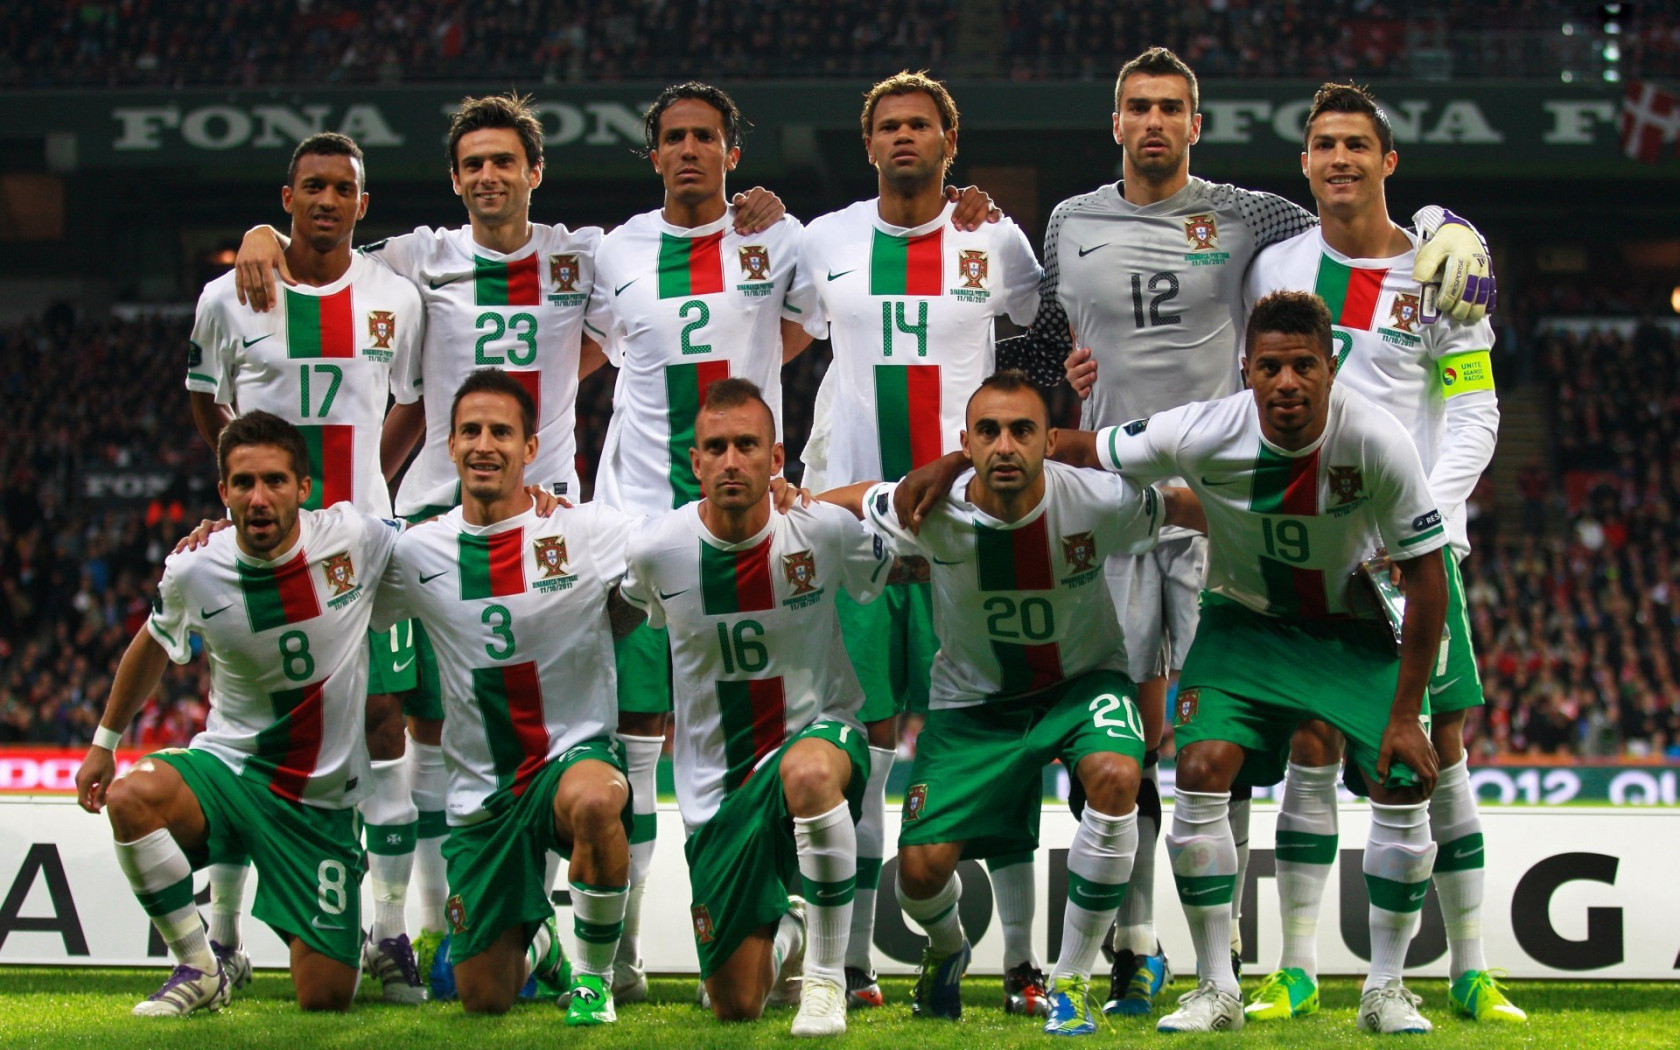 Команда Португалии. Евро 2012